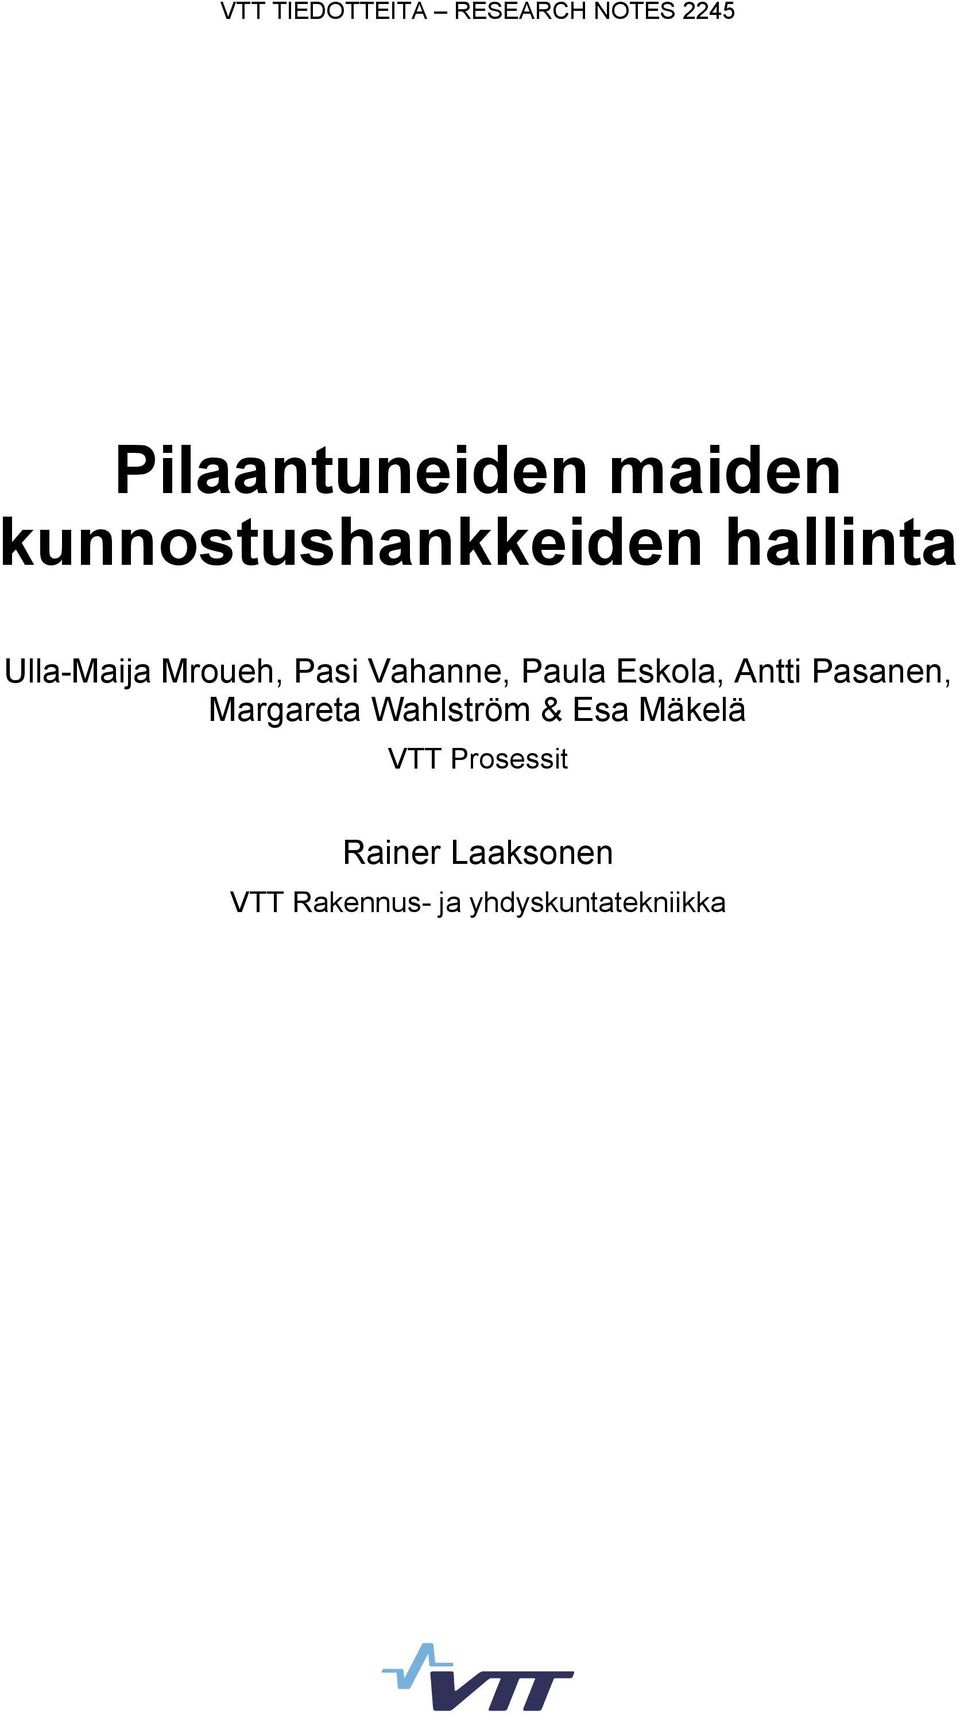 Paula Eskola, Antti Pasanen, Margareta Wahlström & Esa Mäkelä